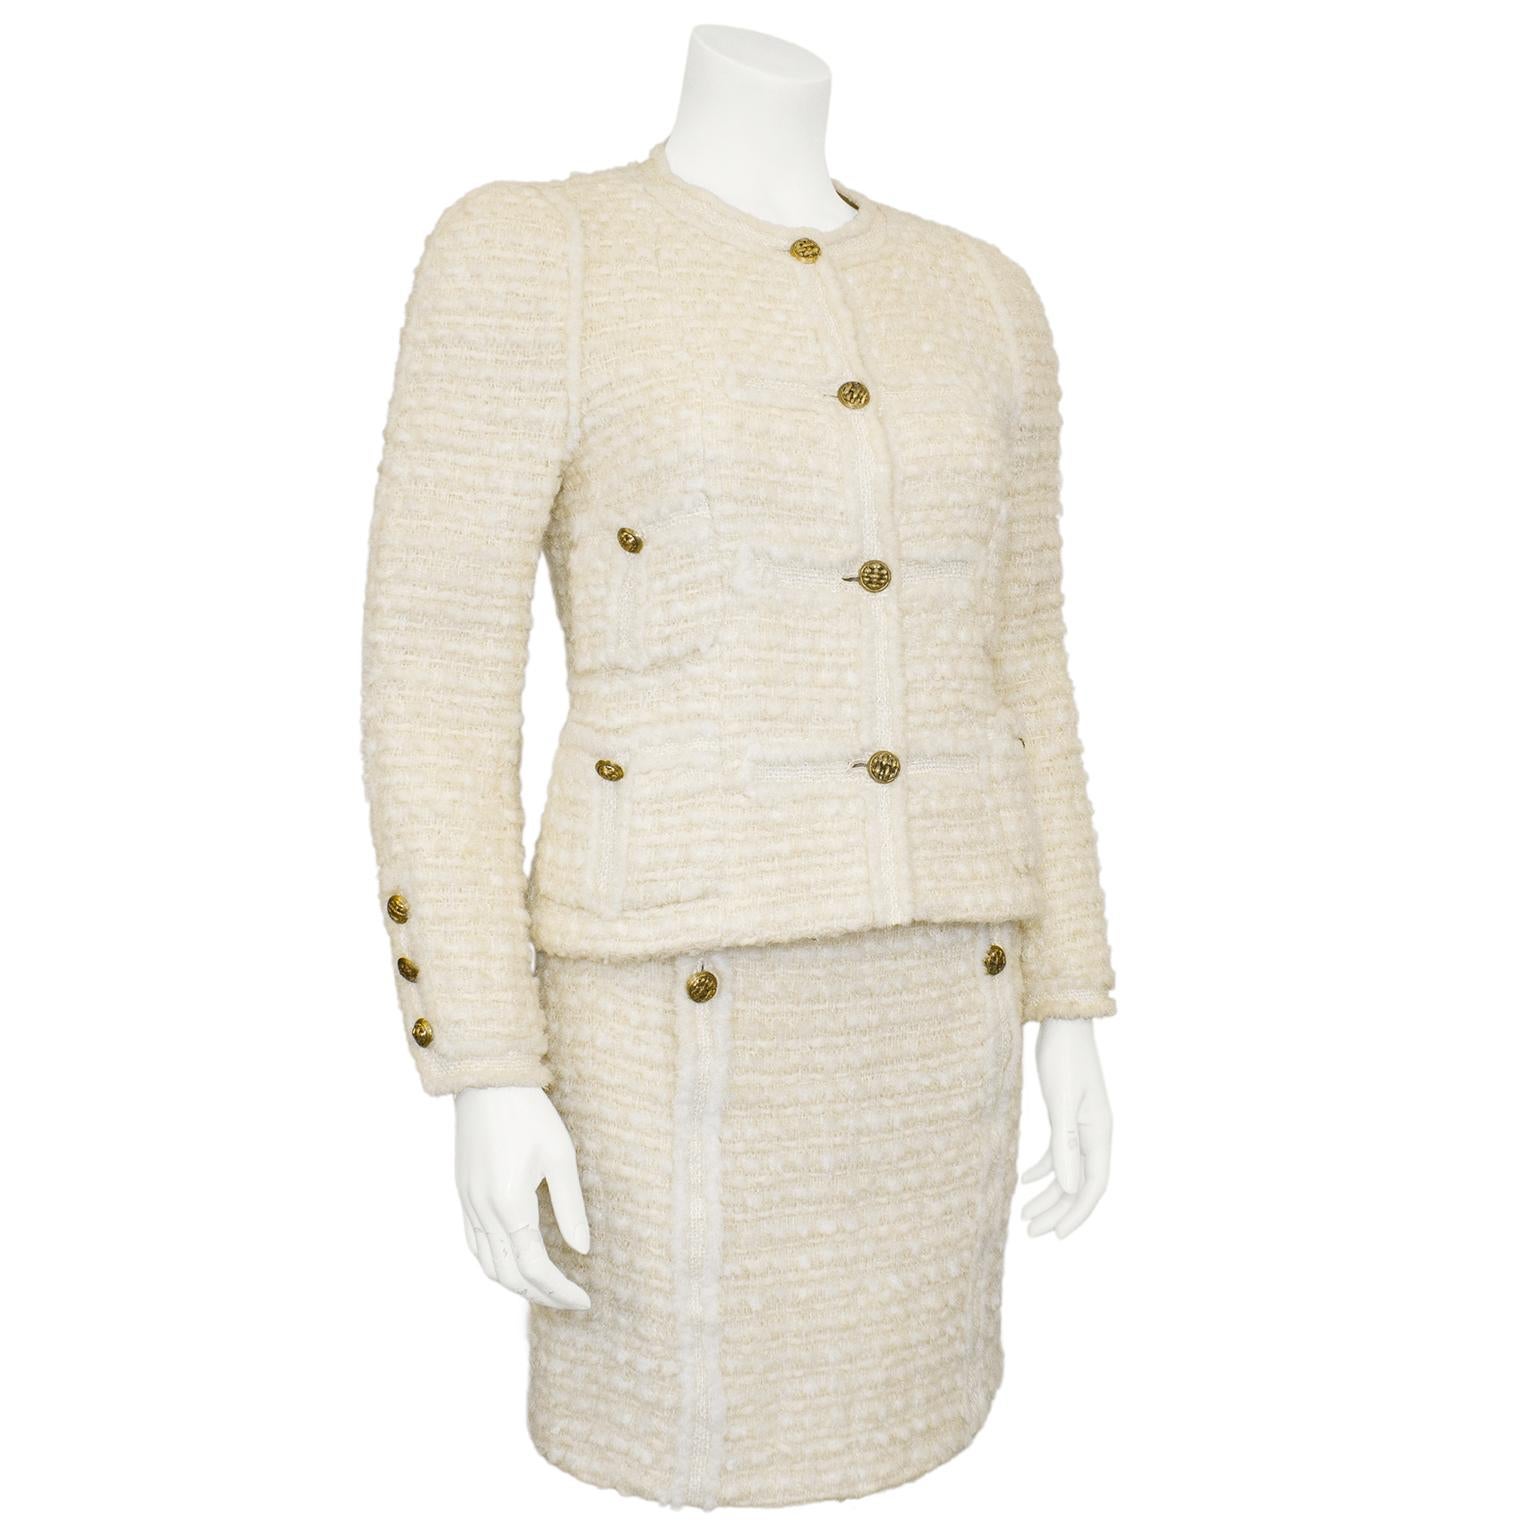 Tailleur jupe en laine bouclée crème de Chanel Haute Couture des années 1980, absolument superbe et classique. Veste sans col avec quatre poches plaquées. Boutons ronds en métal doré à motif tissé. La boucle est contrastée par des détails en tweed